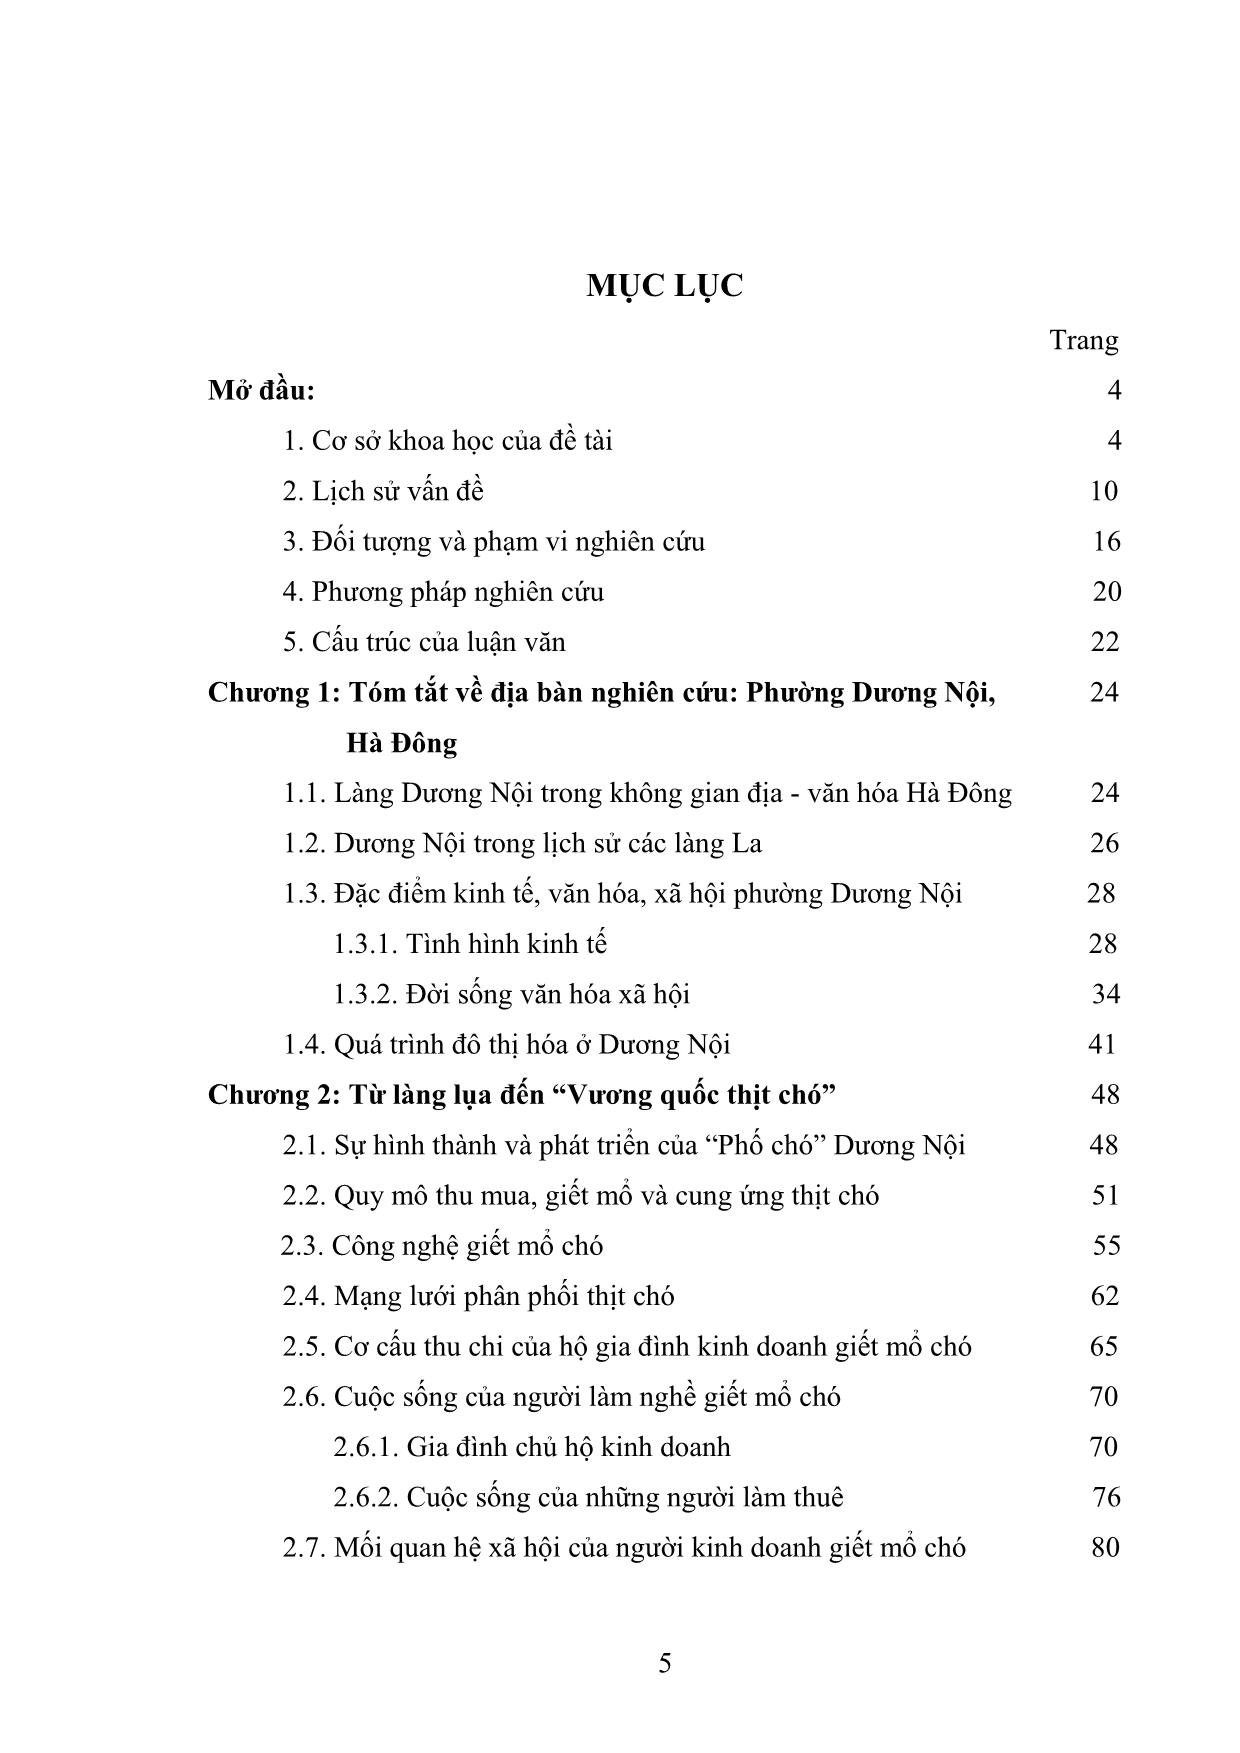 Thịt chó trong văn hóa ẩm thực của người Việt - Nghiên cứu trường hợp phường Dương Nội, quận Hà Đông, Hà Nội trang 2